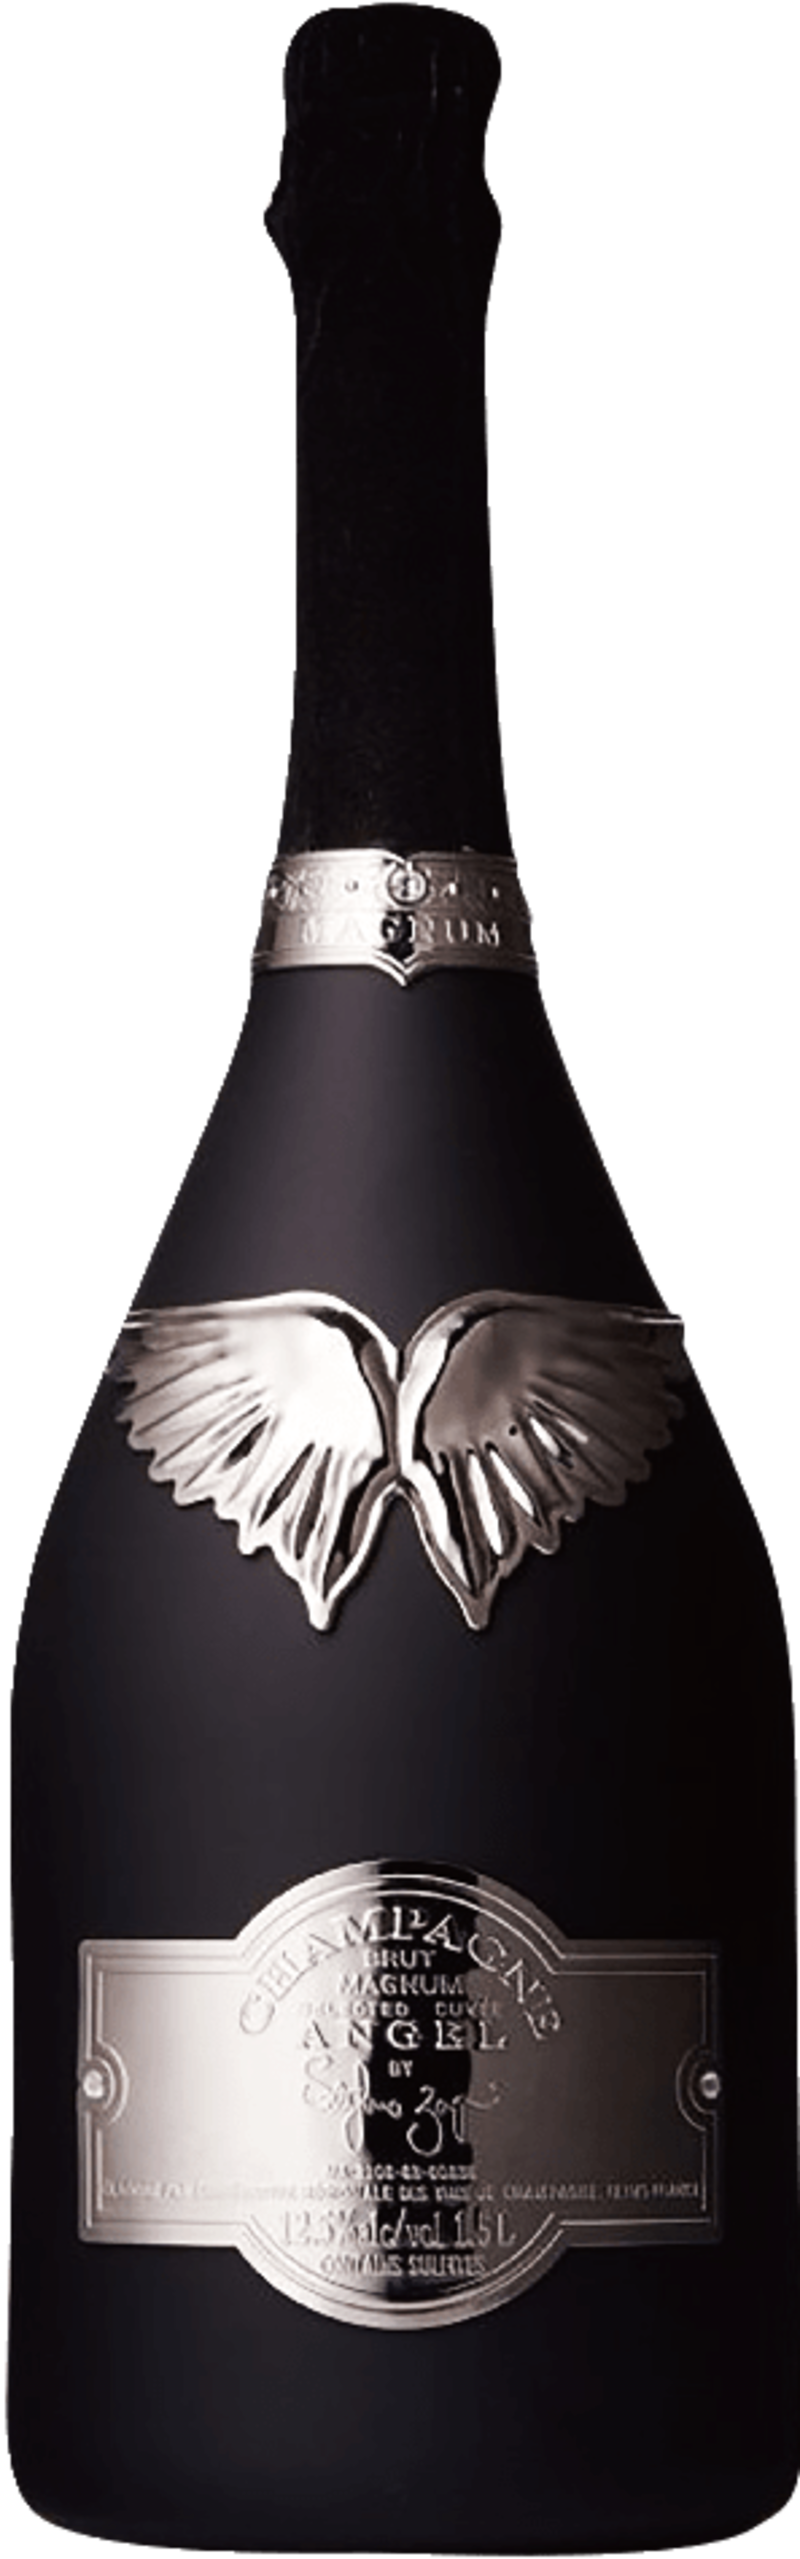 96-963945_angel-champagne-nv-brut-black-champagne.png